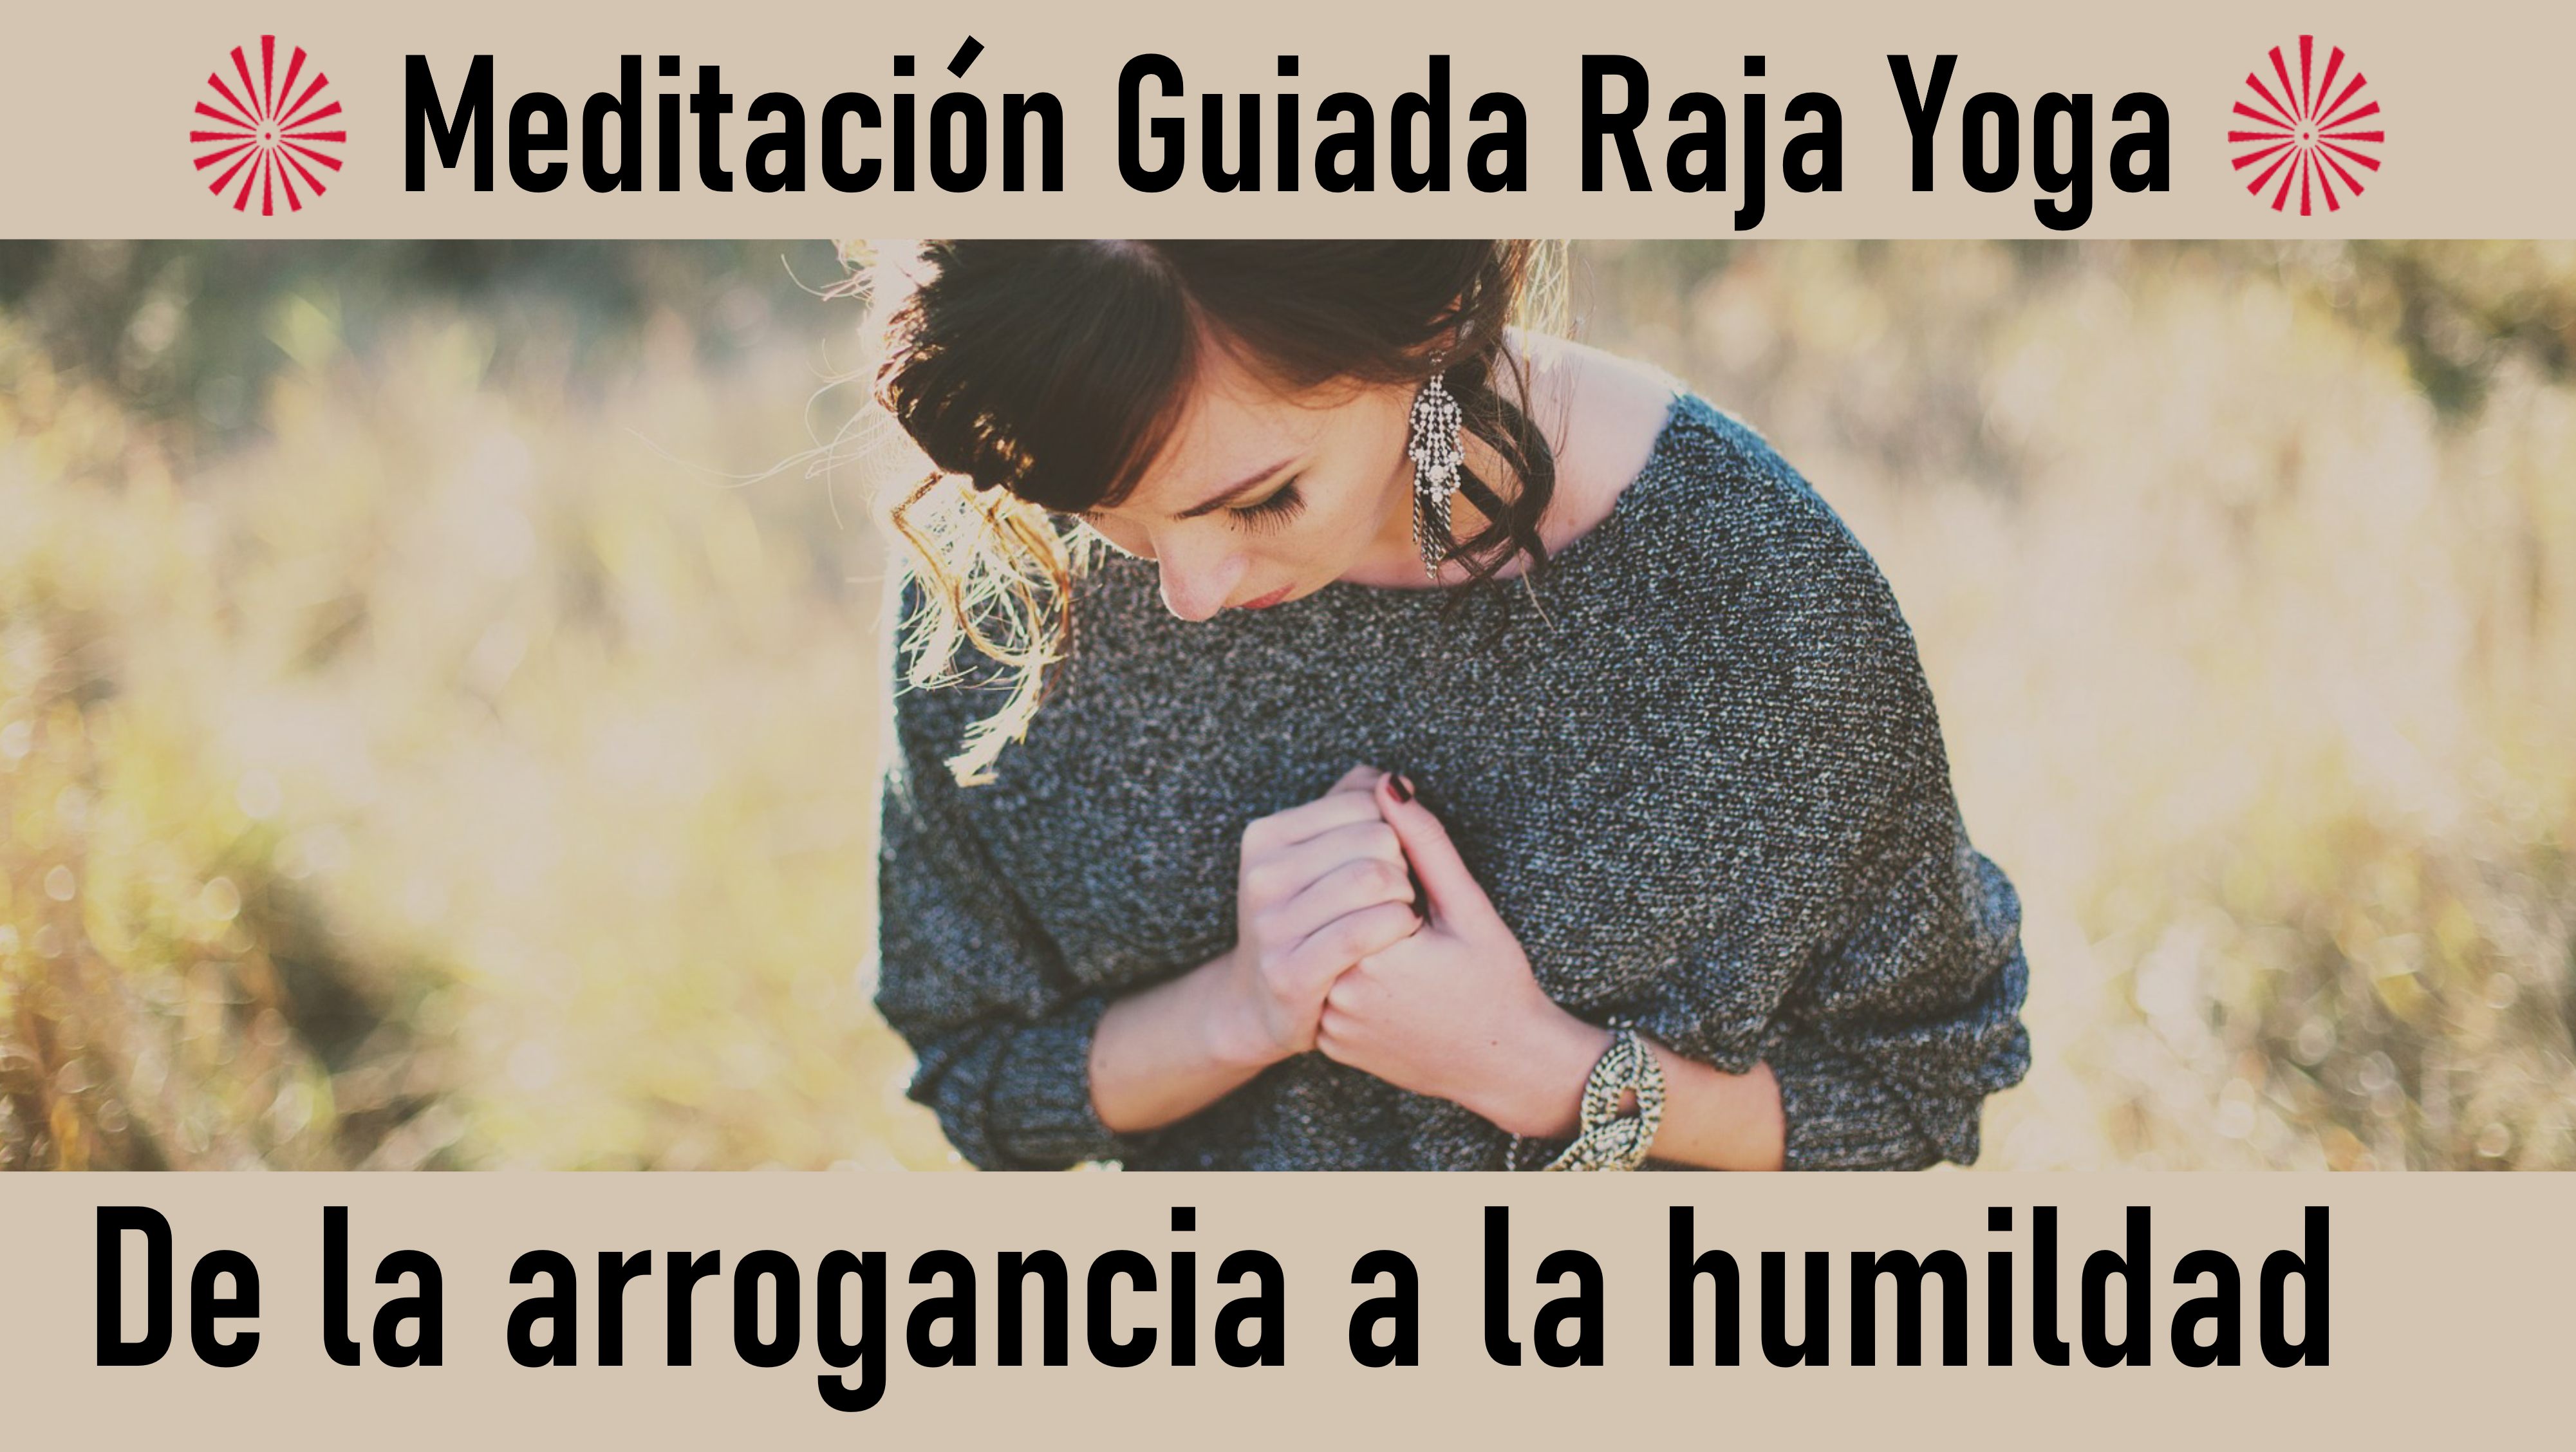 Meditación Raja Yoga: De la arrogancia a la humildad (27 Junio 2020) On-line desde Valencia